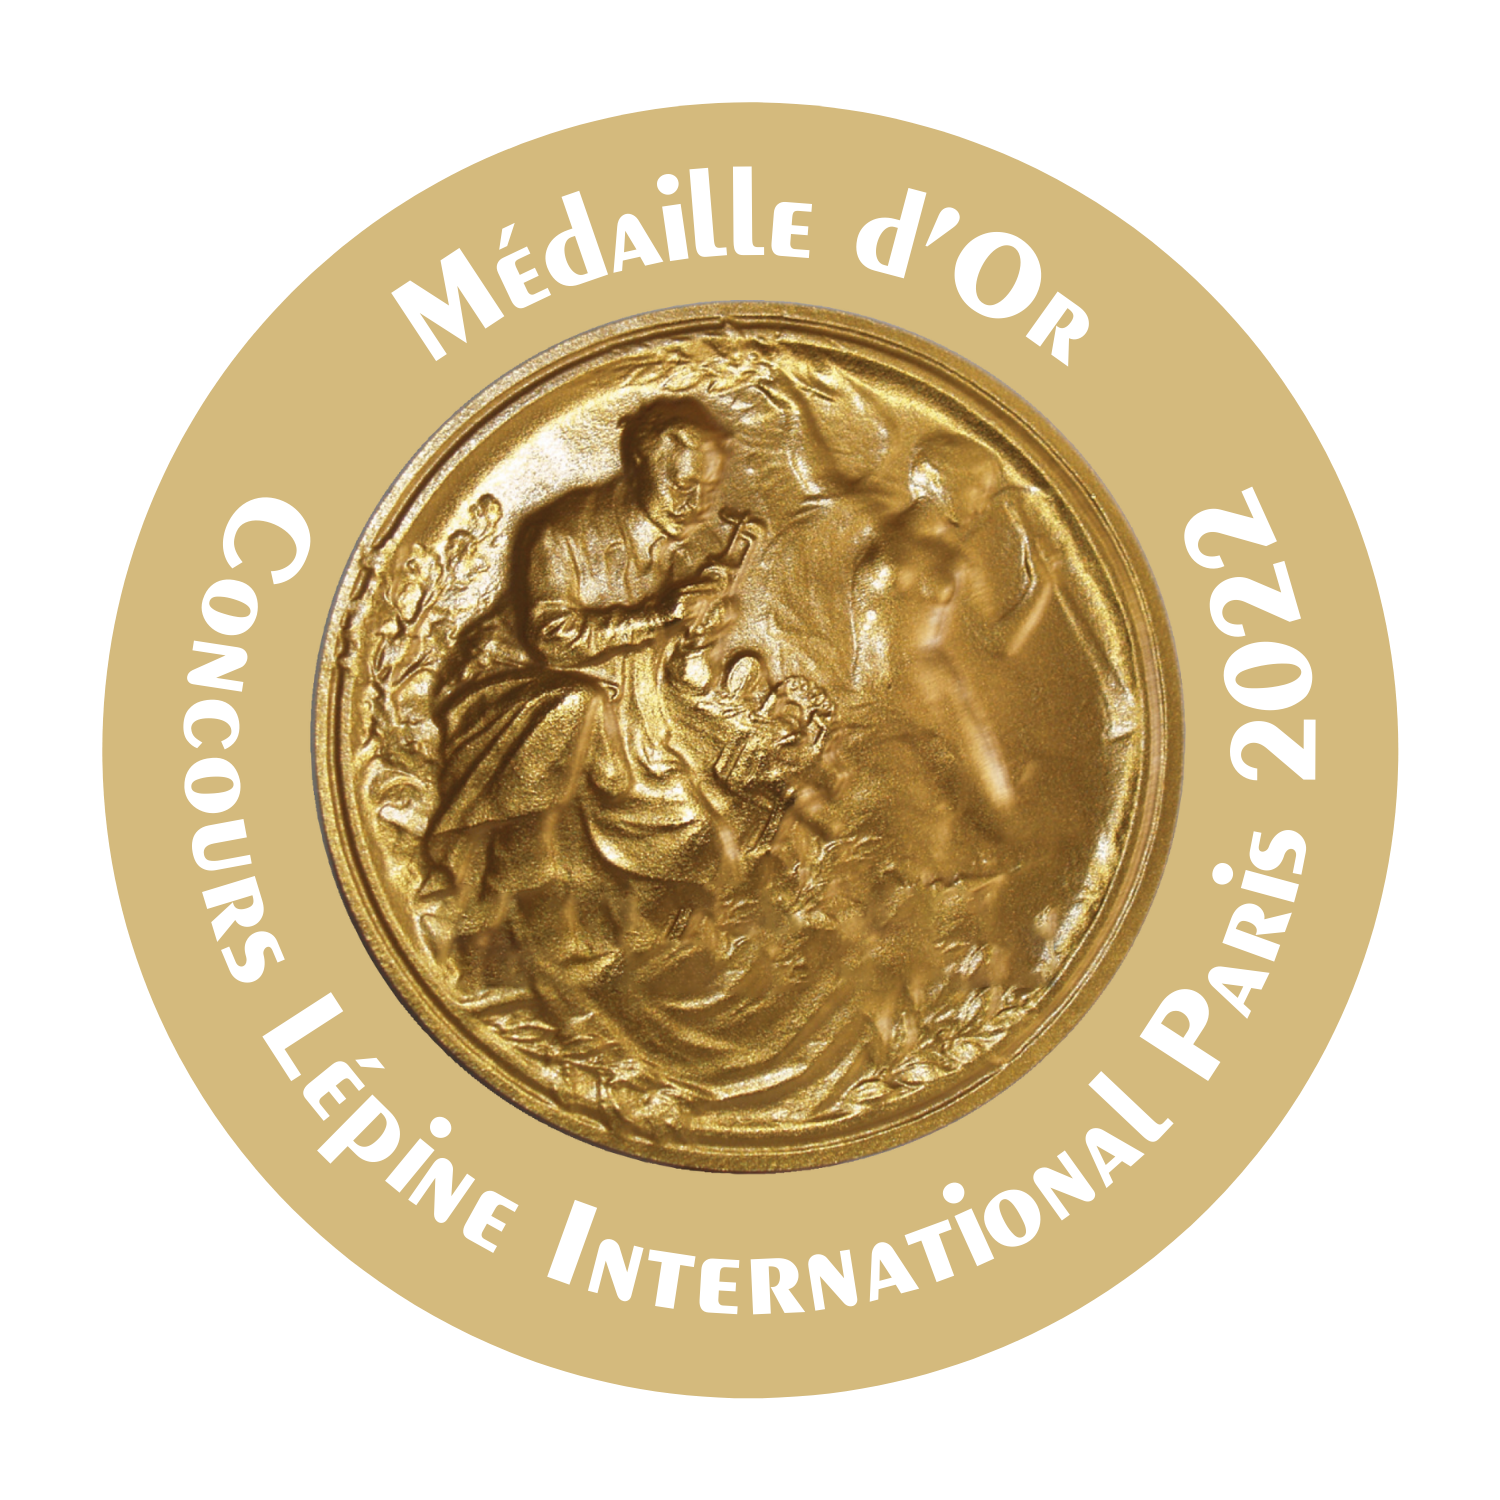 Gold Metal at the Concours Lépine International Paris 2022